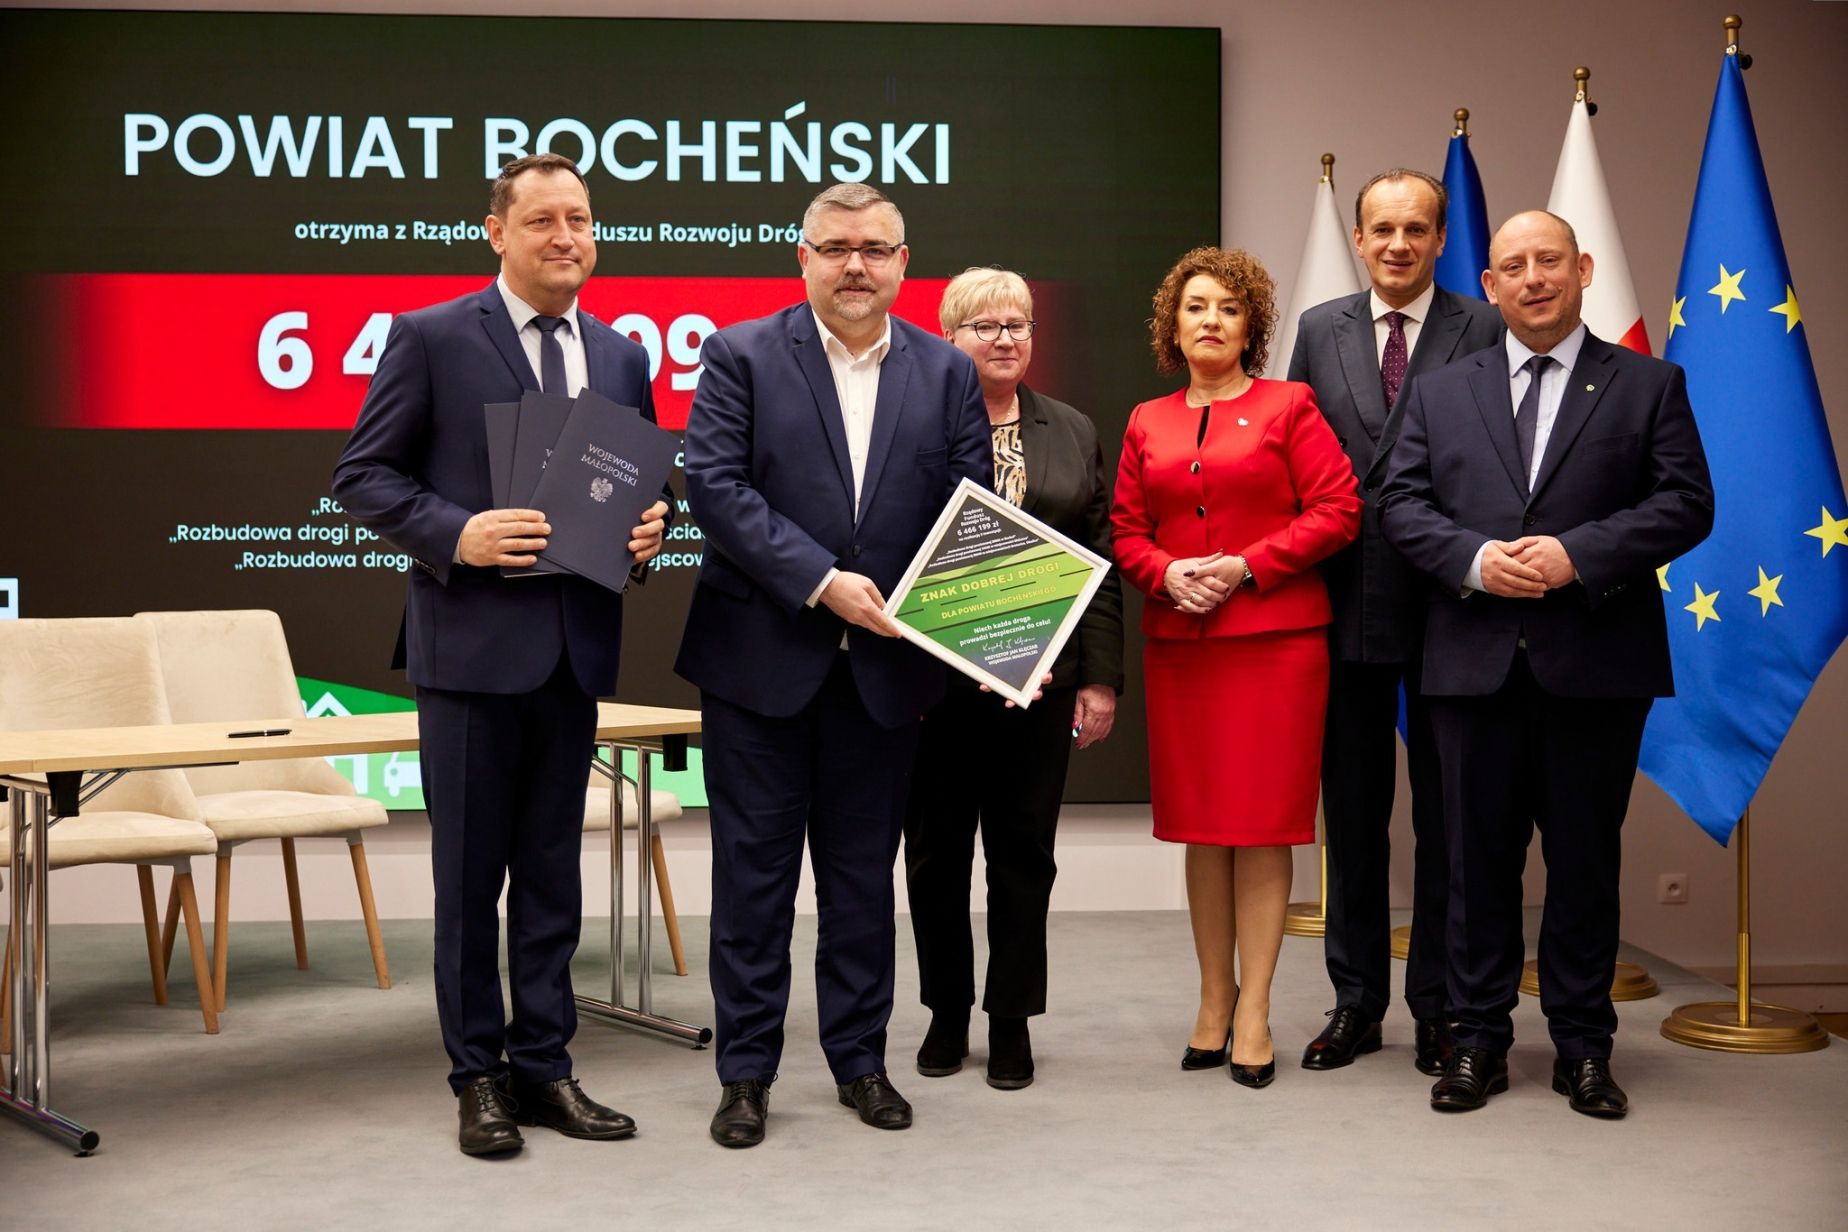 6,5 mln zł na rozbudowę trzech dróg w Powiecie Bocheńskim z Rządowego Funduszu Rozwoju Dróg.